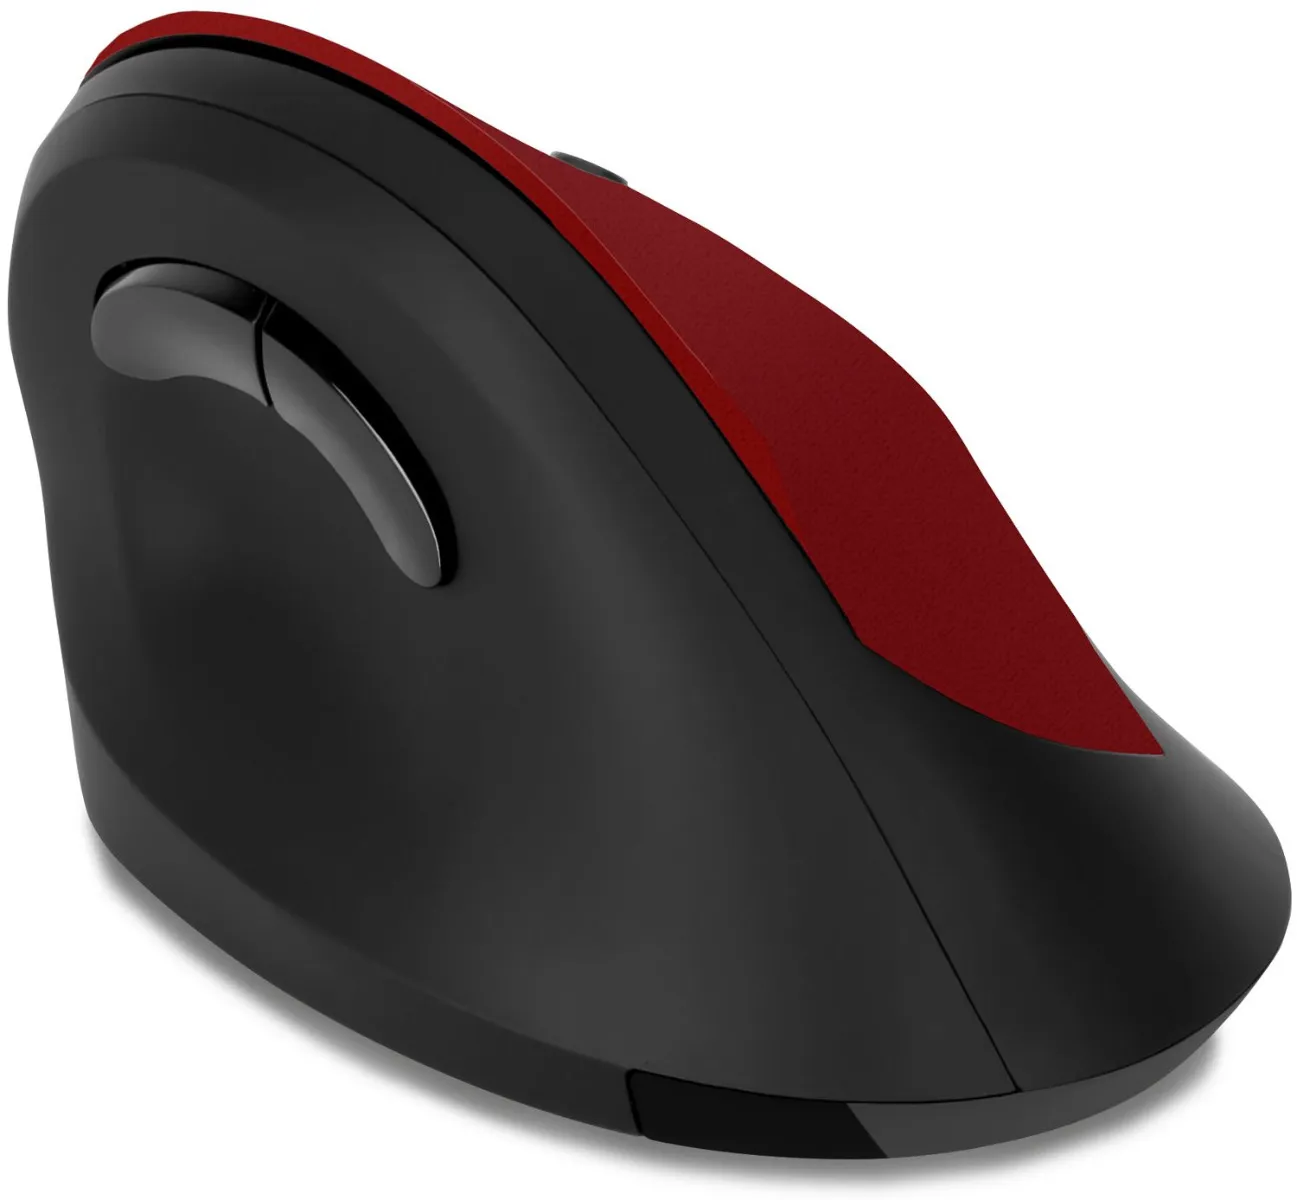 Connect IT CMO-2700-RD ergonomická vertikální myš červená